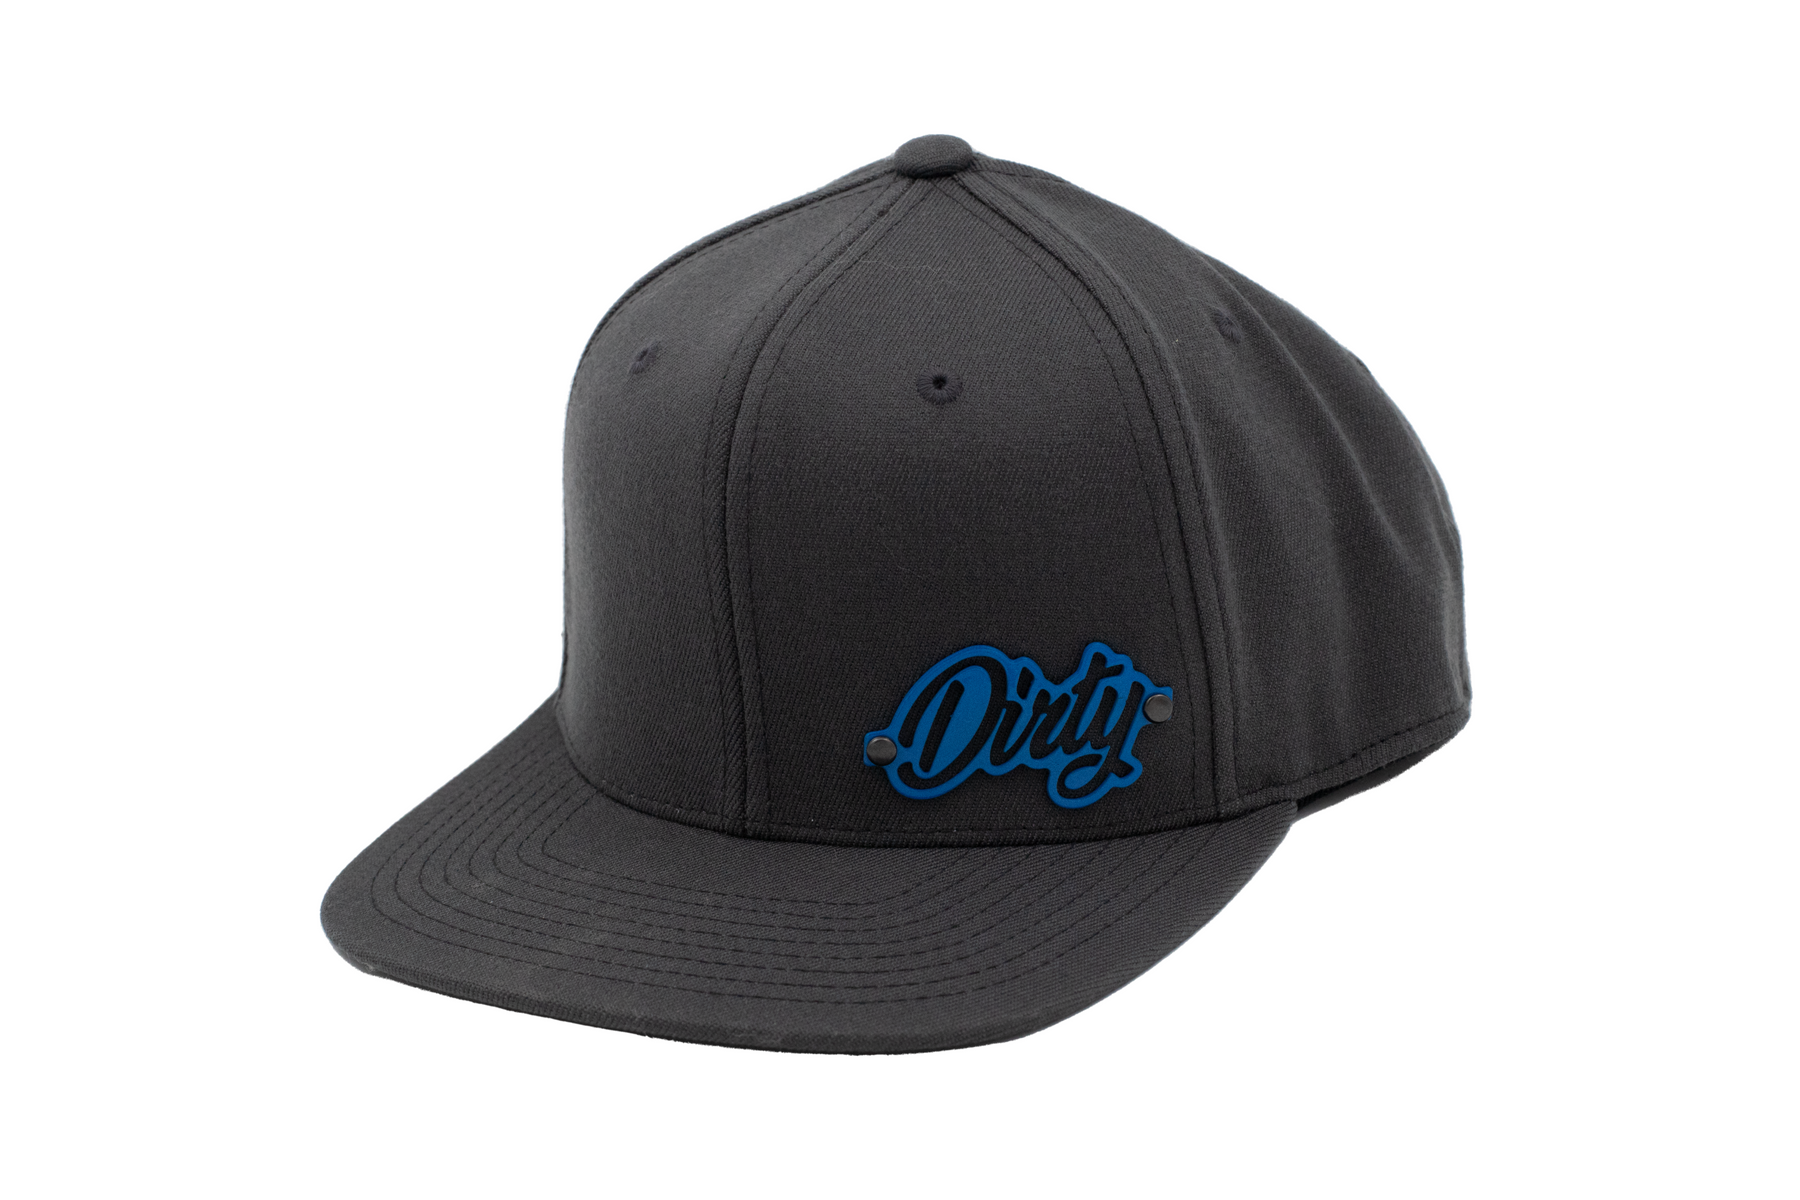 Dirty Diesel Grey Trigger Hat-Hat-Dirty Diesel Customs-Dirty Diesel Customs